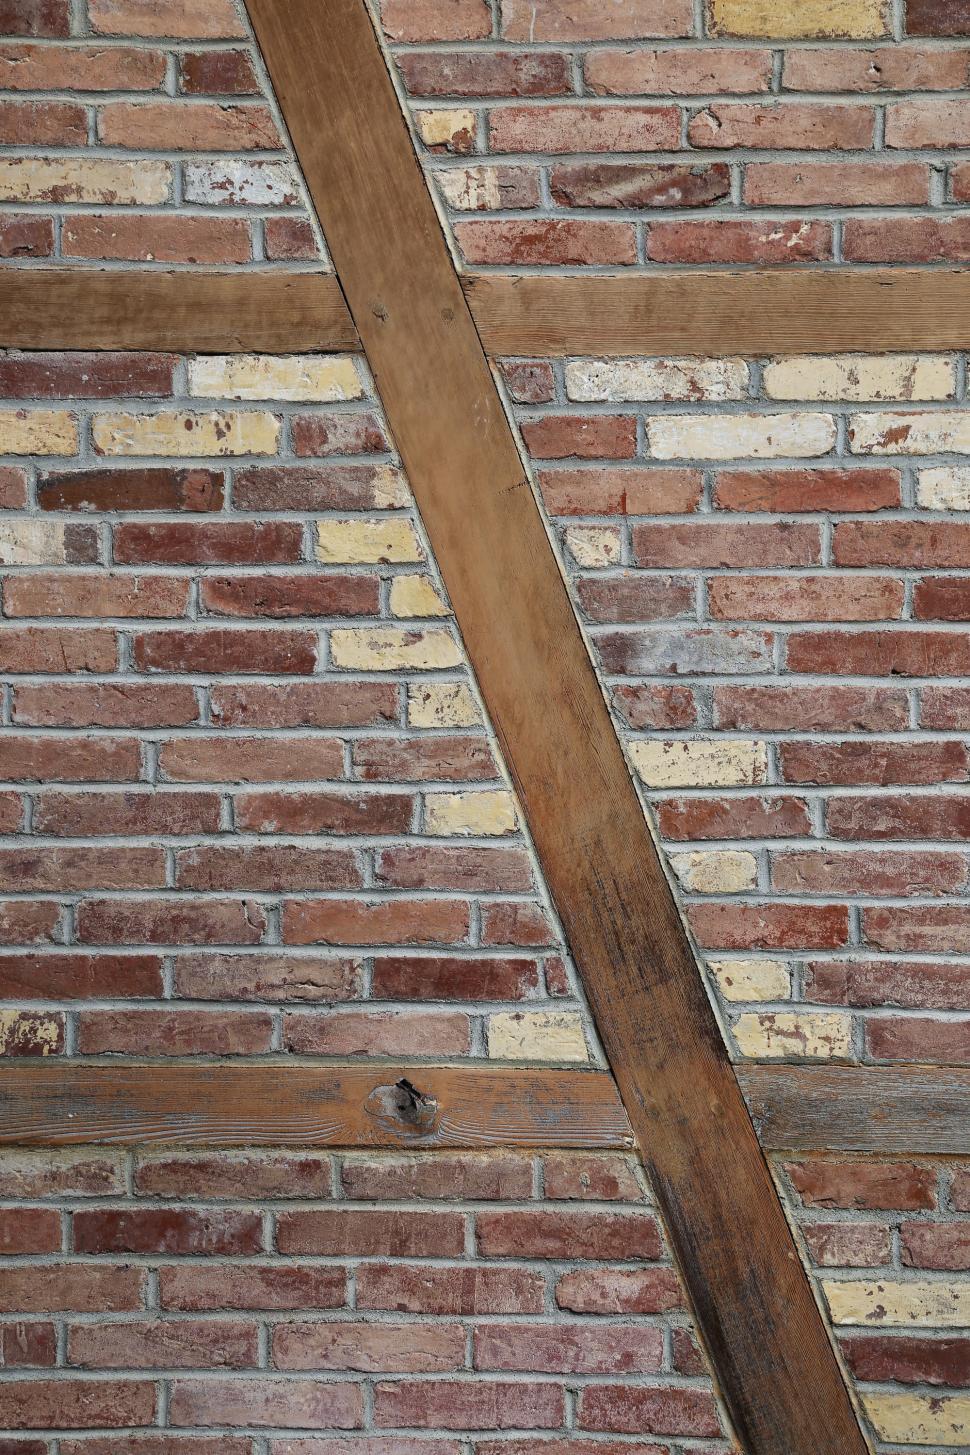 Free Image of Wood beams in brick wall 